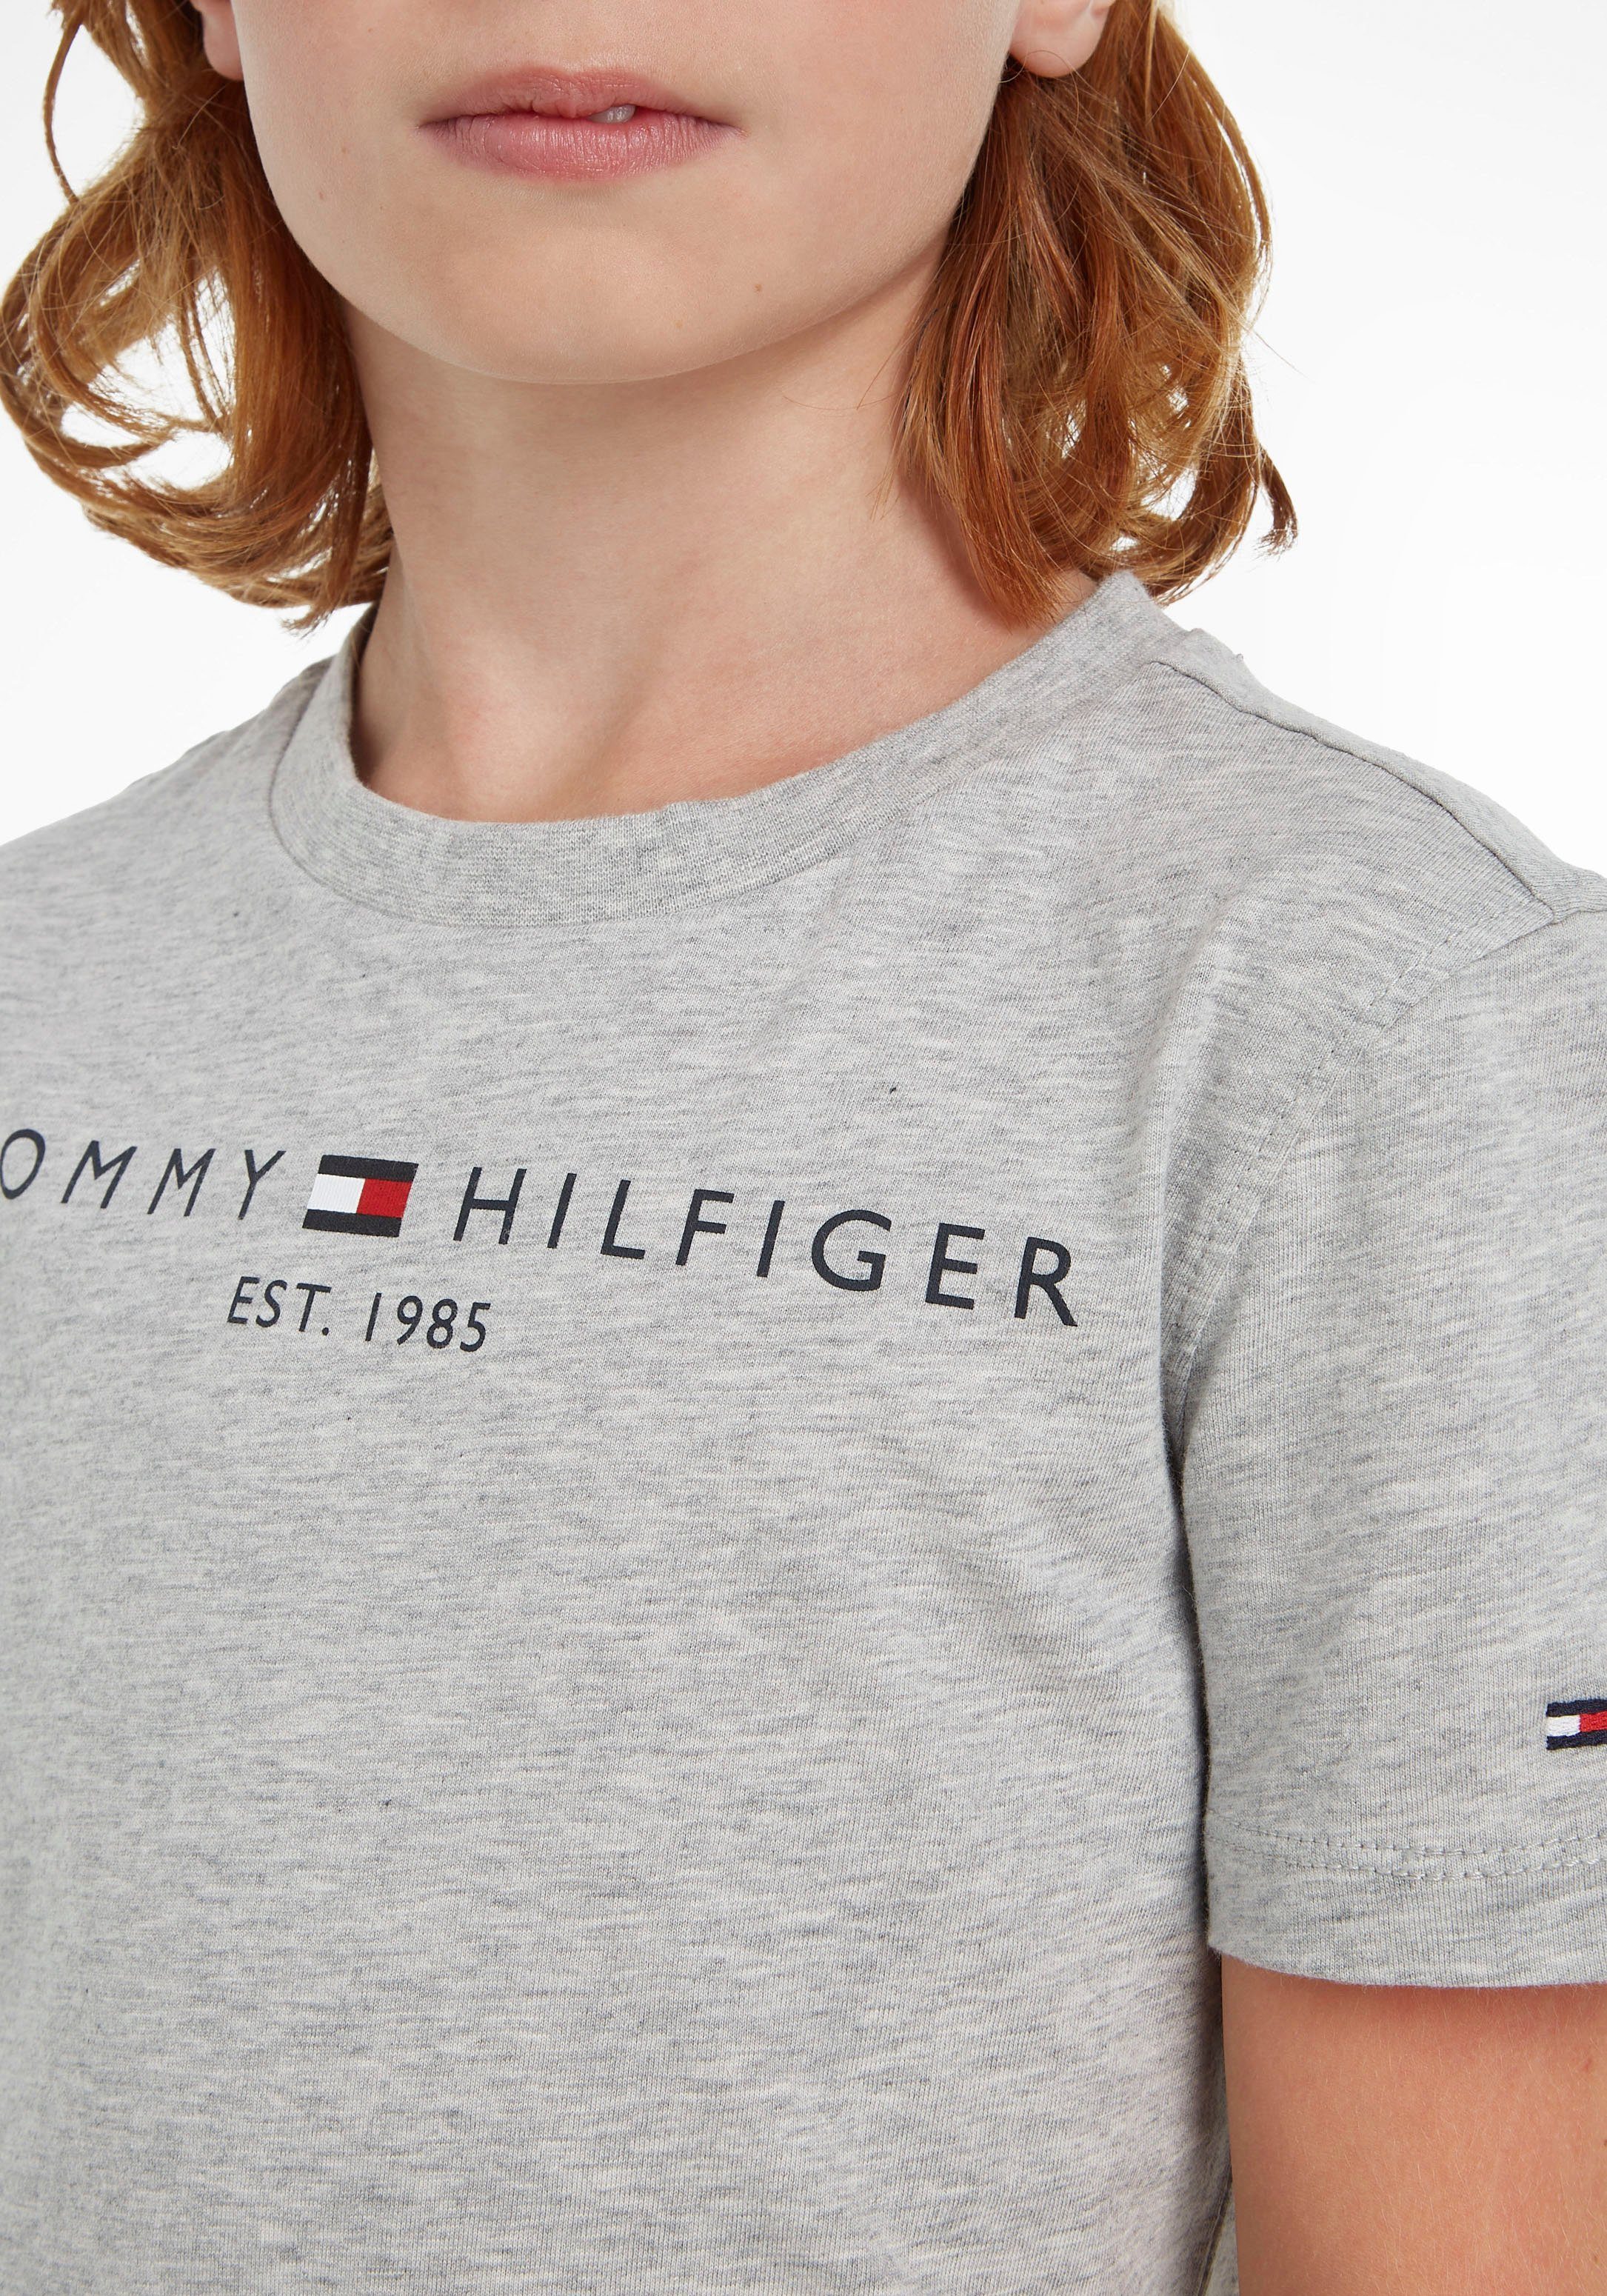 ESSENTIAL Kinder T-Shirt Junior Jungen und Hilfiger Tommy MiniMe,für Mädchen Kids TEE